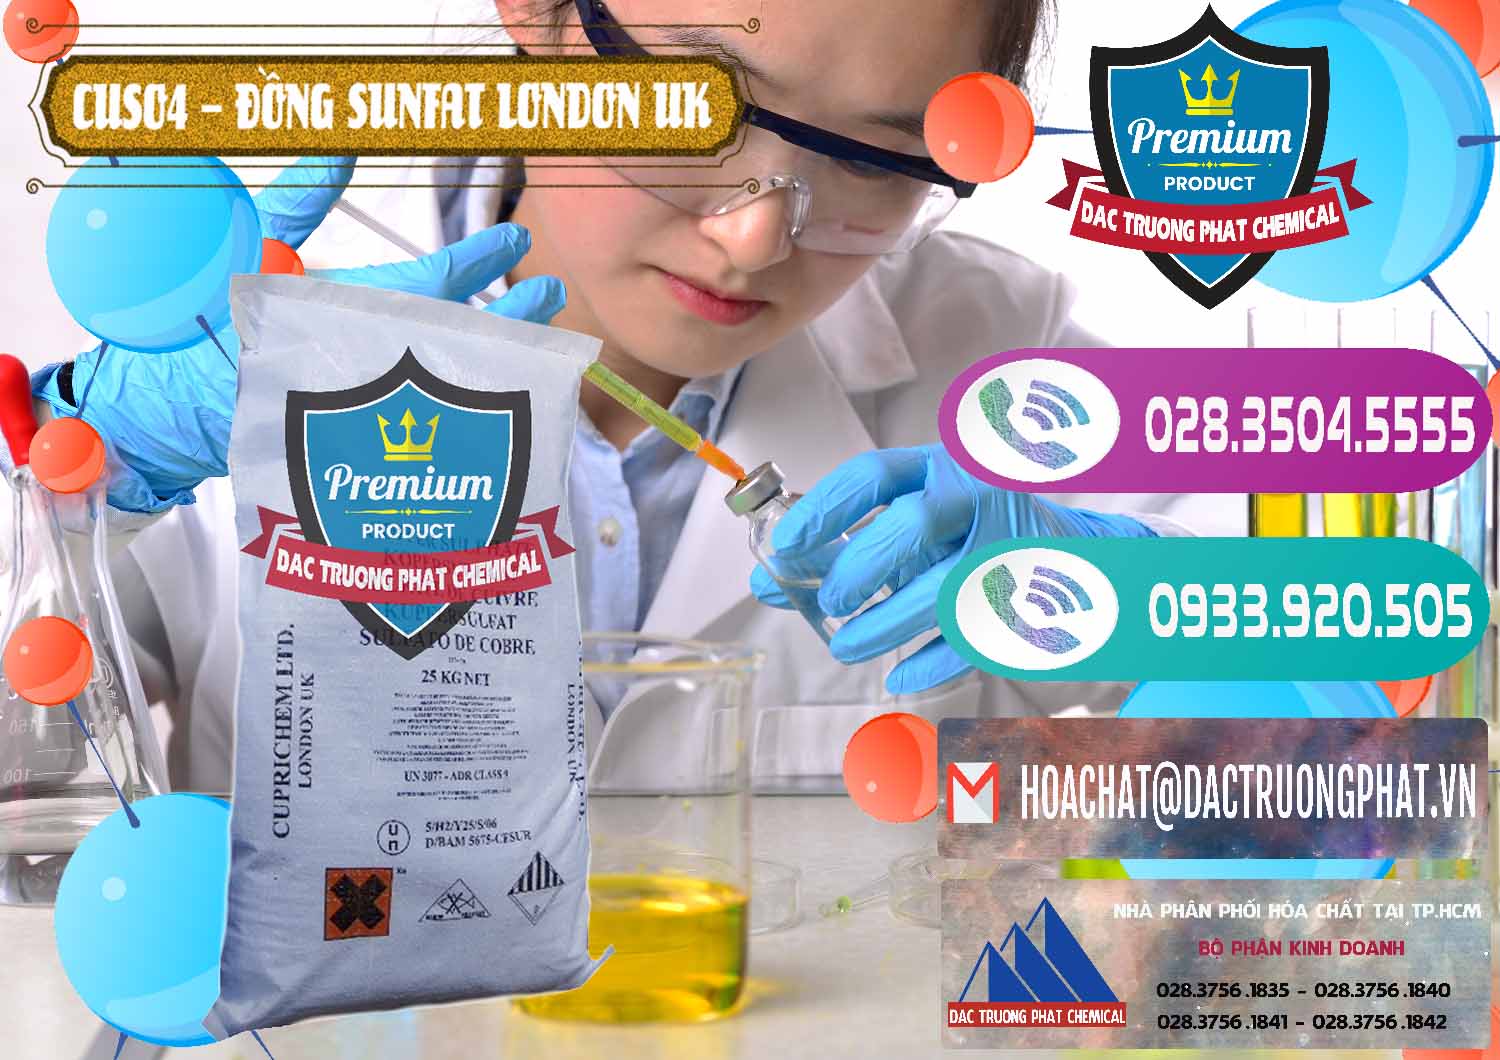 Nơi chuyên bán - cung ứng CuSO4 – Đồng Sunfat Anh Uk Kingdoms - 0478 - Đơn vị cung cấp - phân phối hóa chất tại TP.HCM - hoachatxulynuoc.com